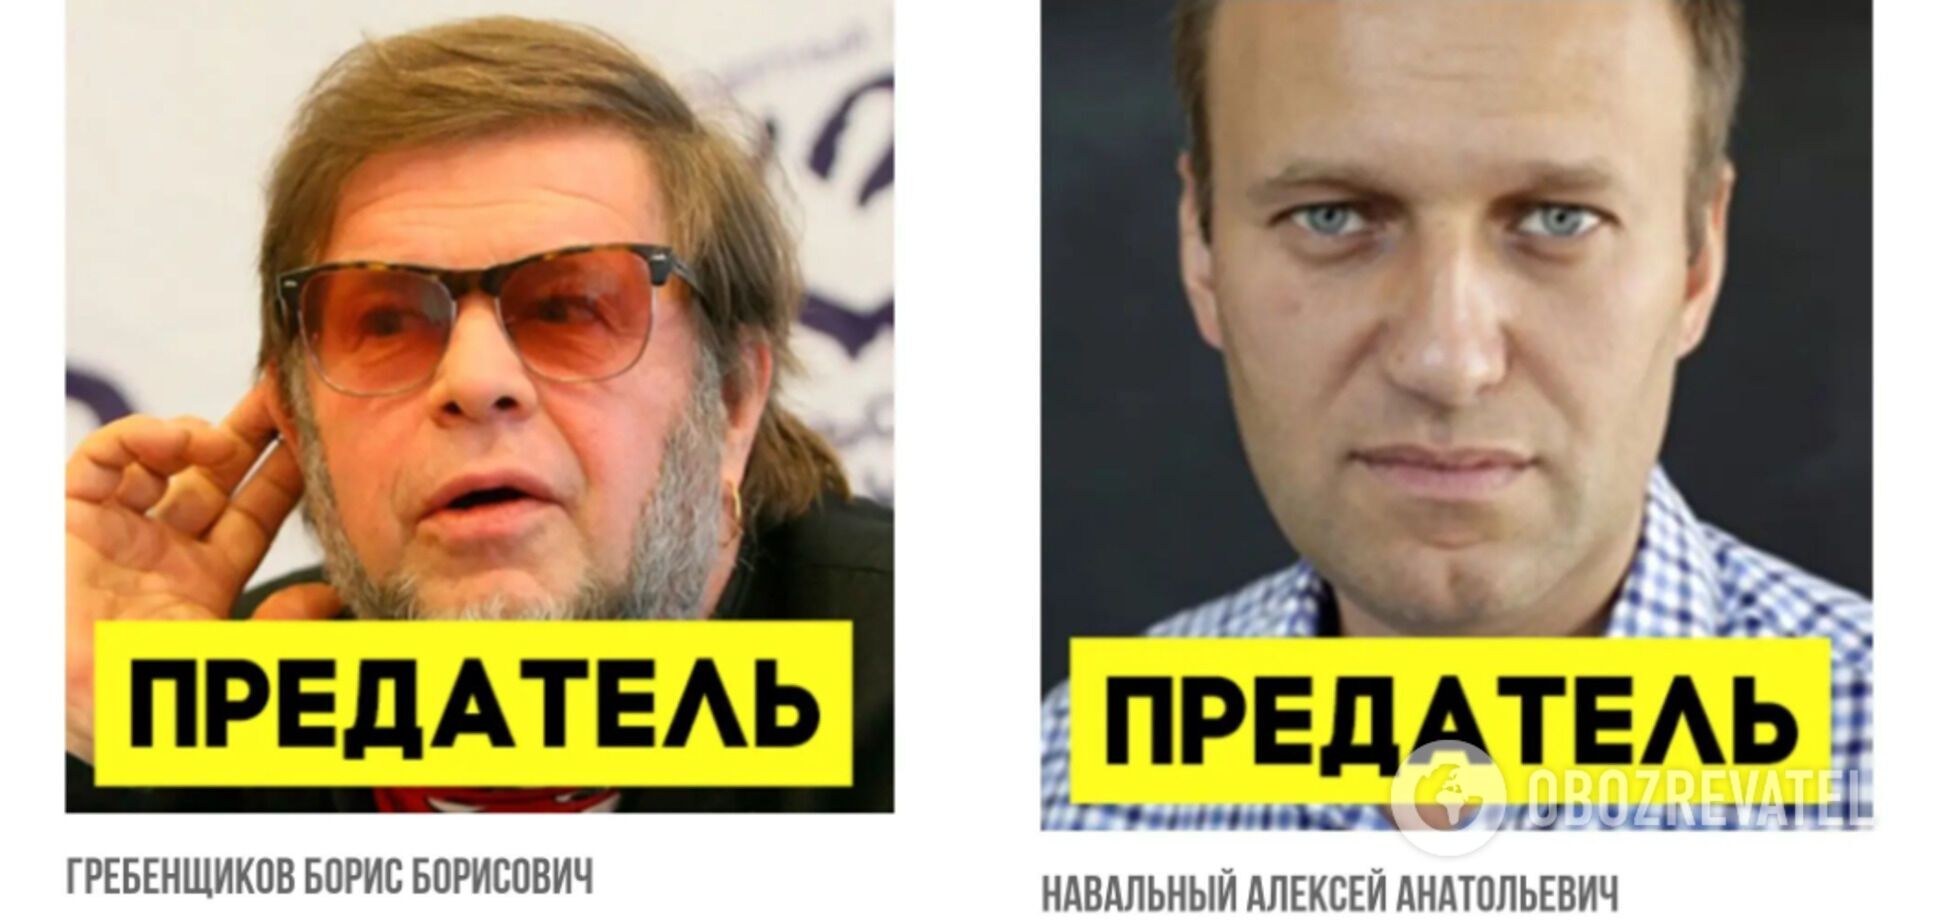 В список вошли Навальный и Гребенщиков